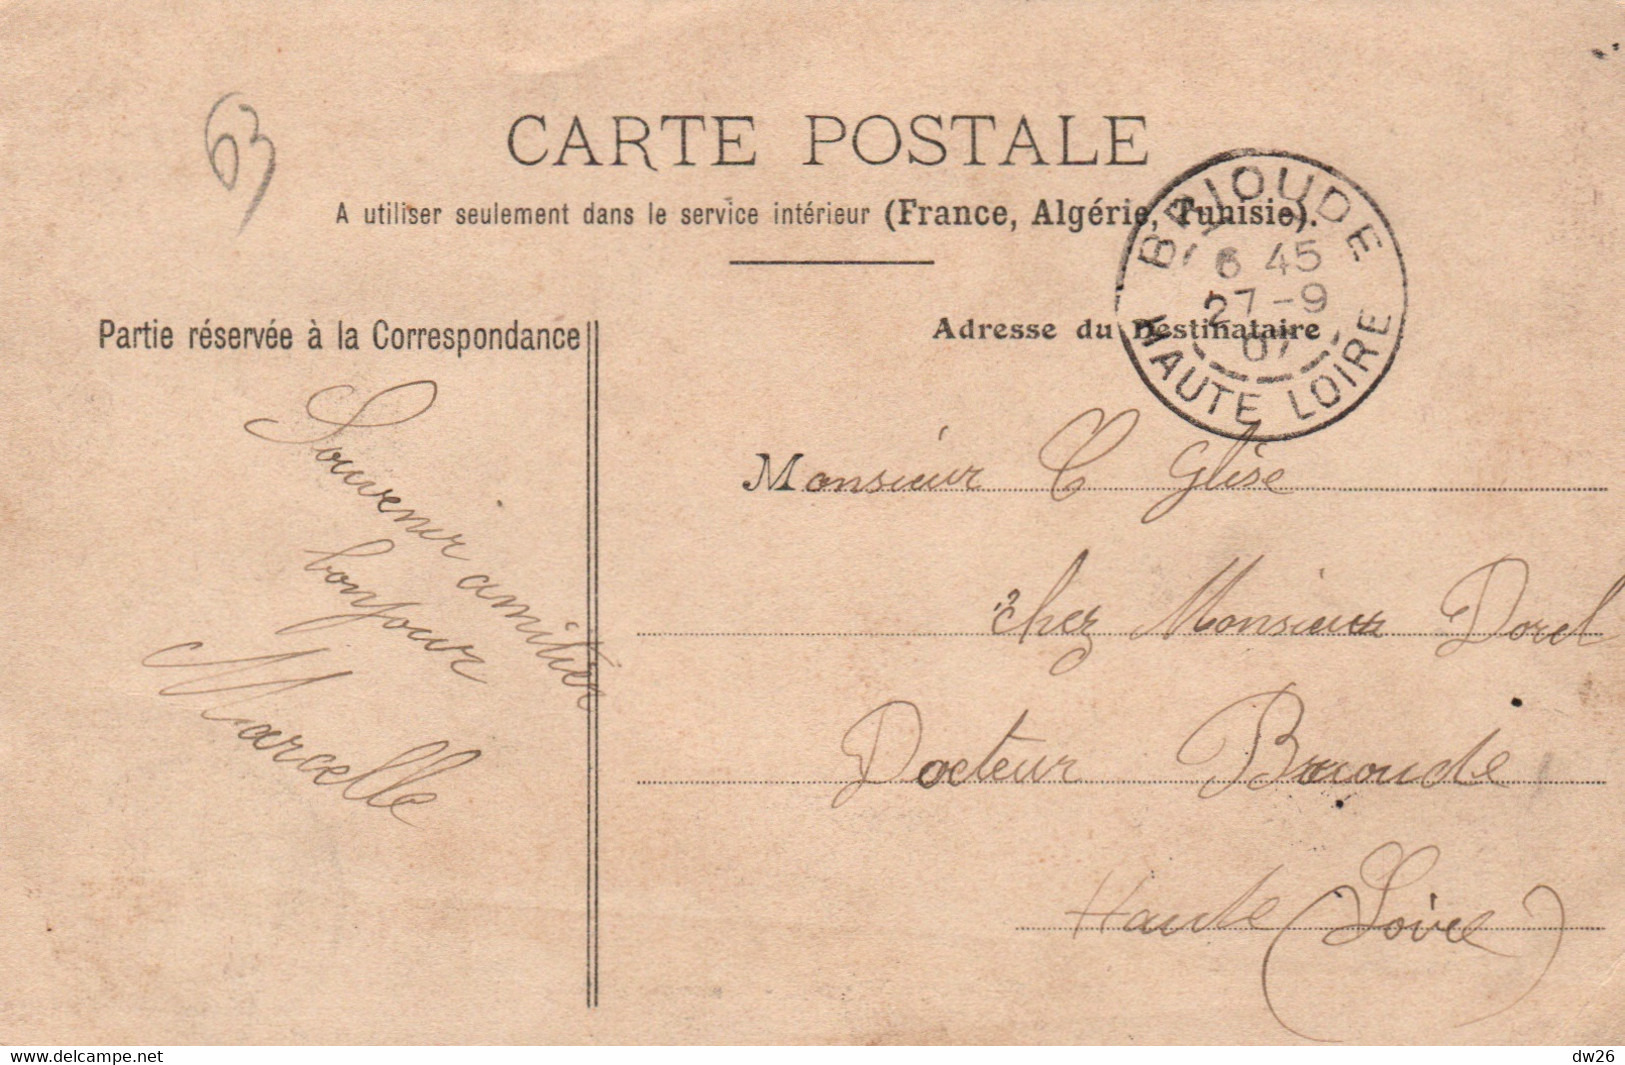 Casernes: Clermont-Ferrand - Caserne D'Estaing - Edition P.H. & Cie Nancy - Carte N° 53 De 1907 - Casernes